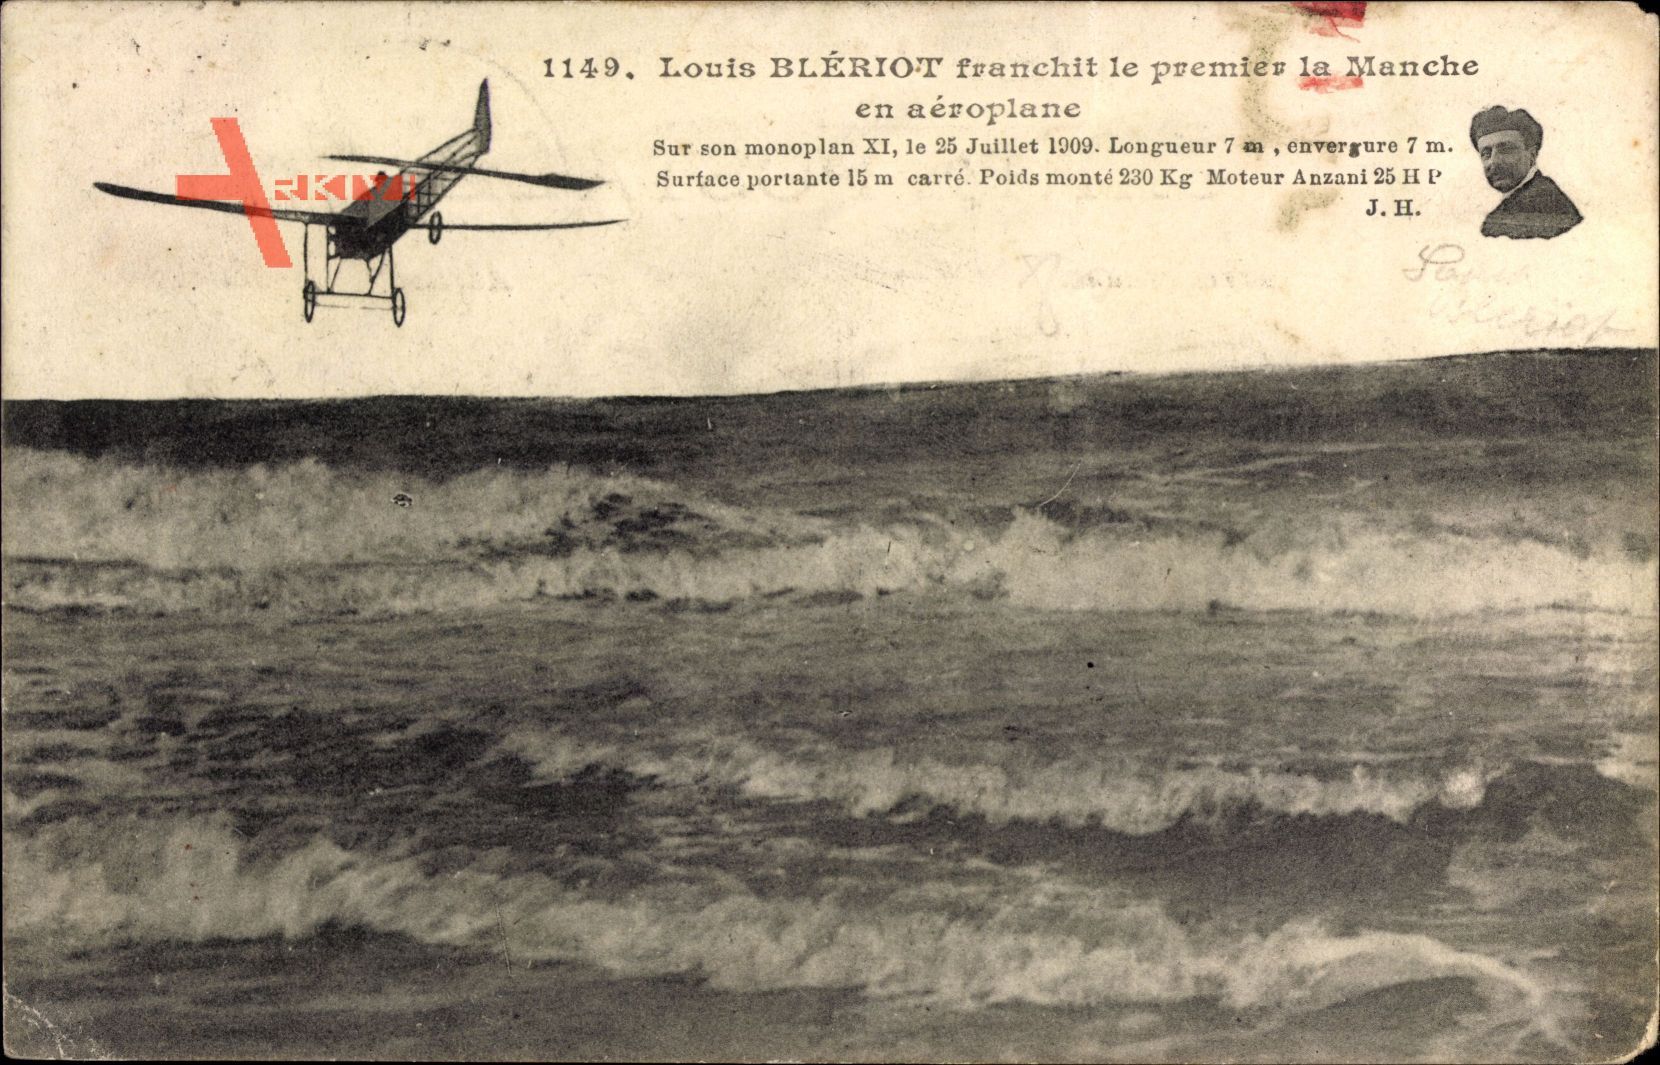 Louis Blériot franchit le premnier la Manche en aéroplane, 25 Juillet 1909